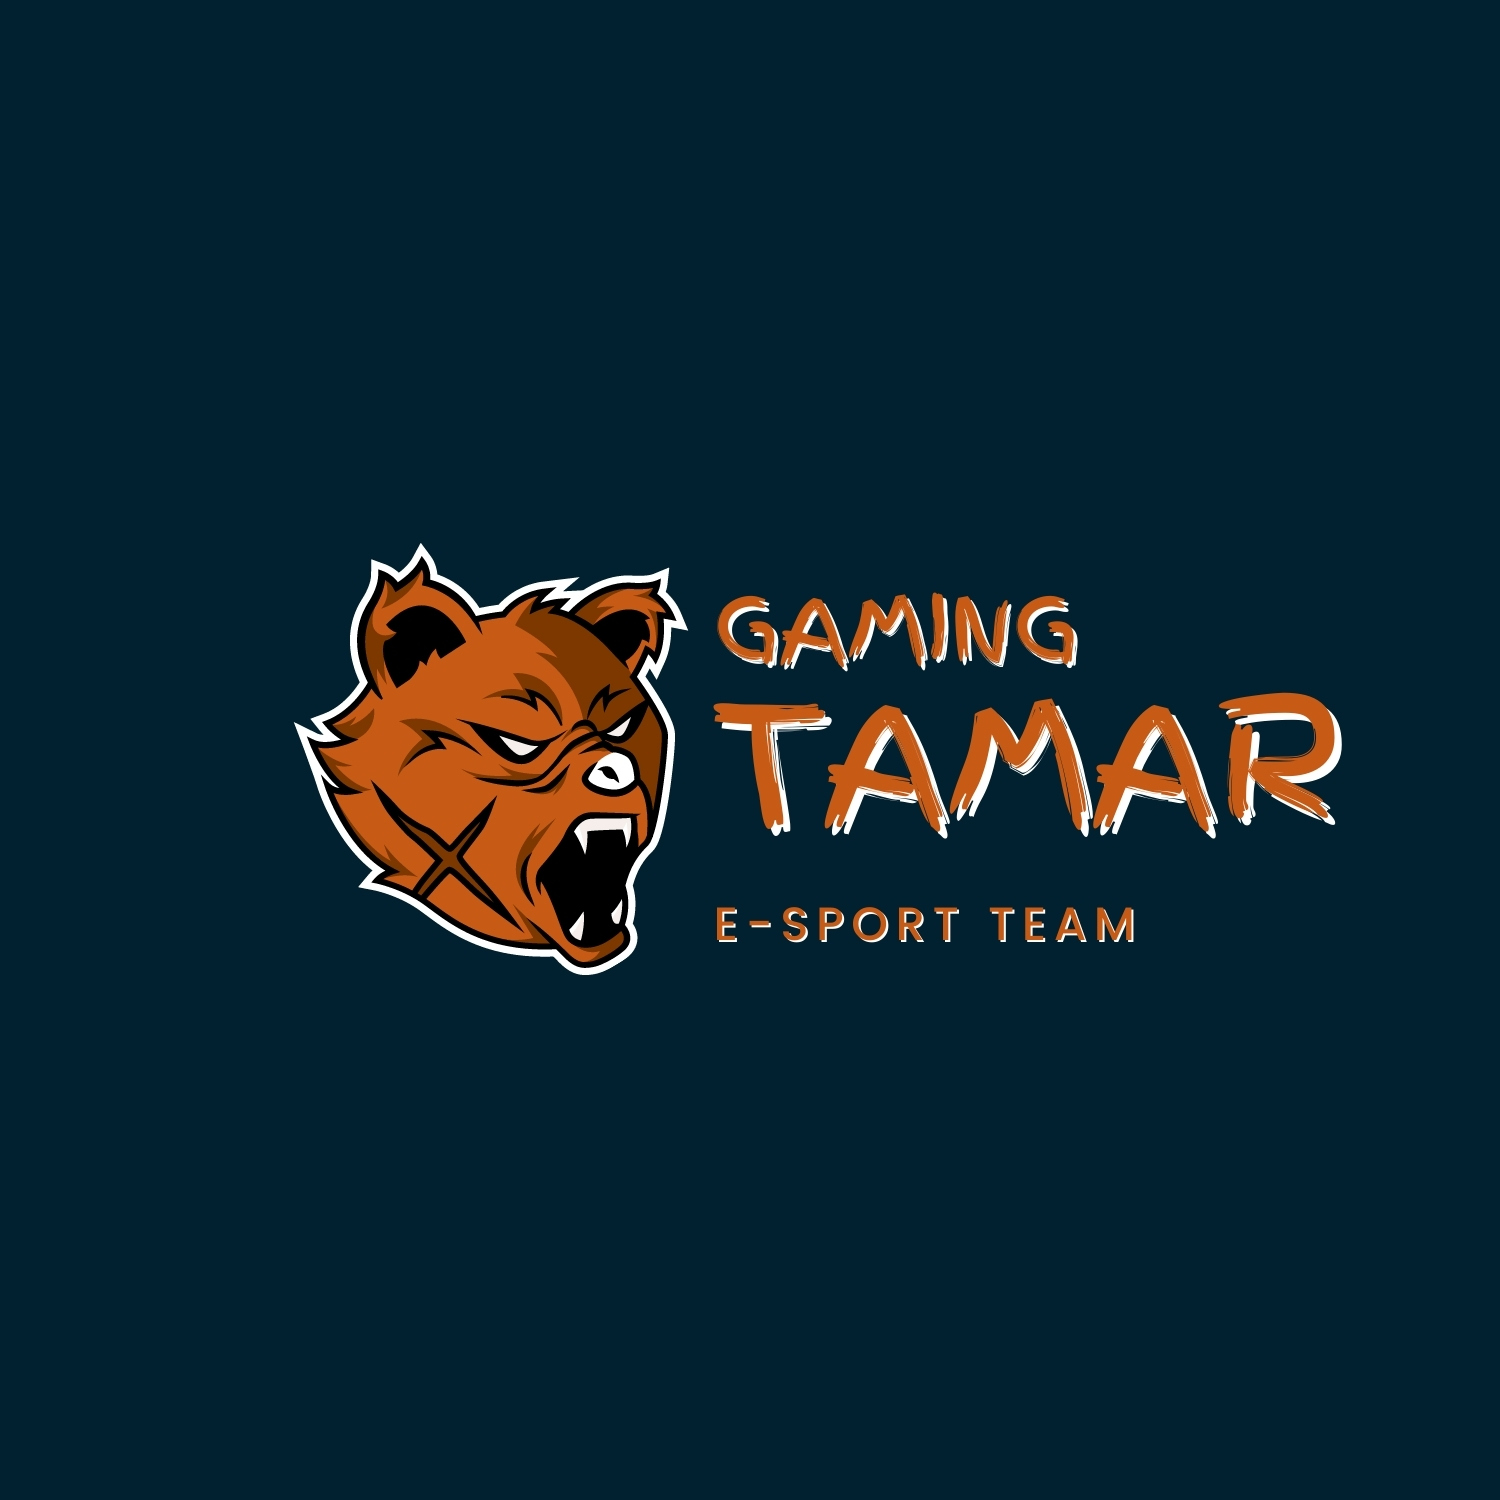 angry brown bear gaming logo